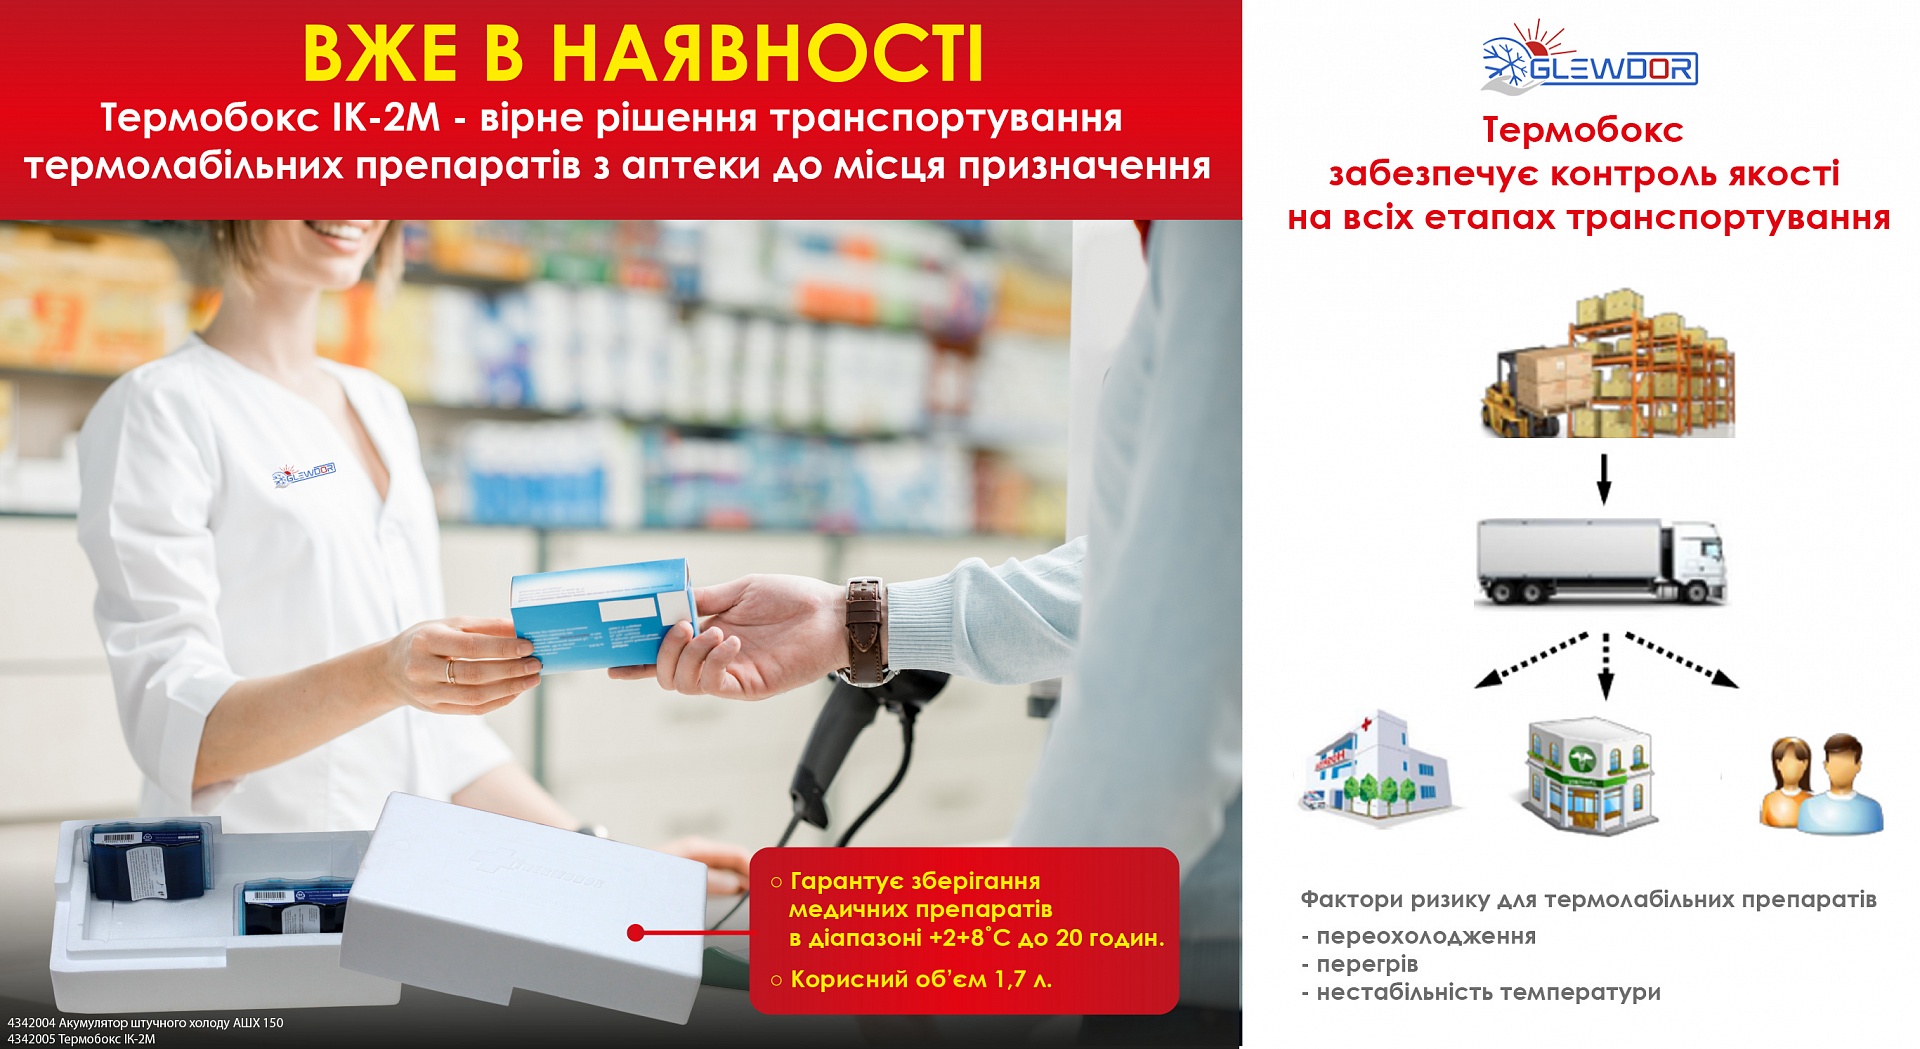 Заказ лекарств с доставкой московская область